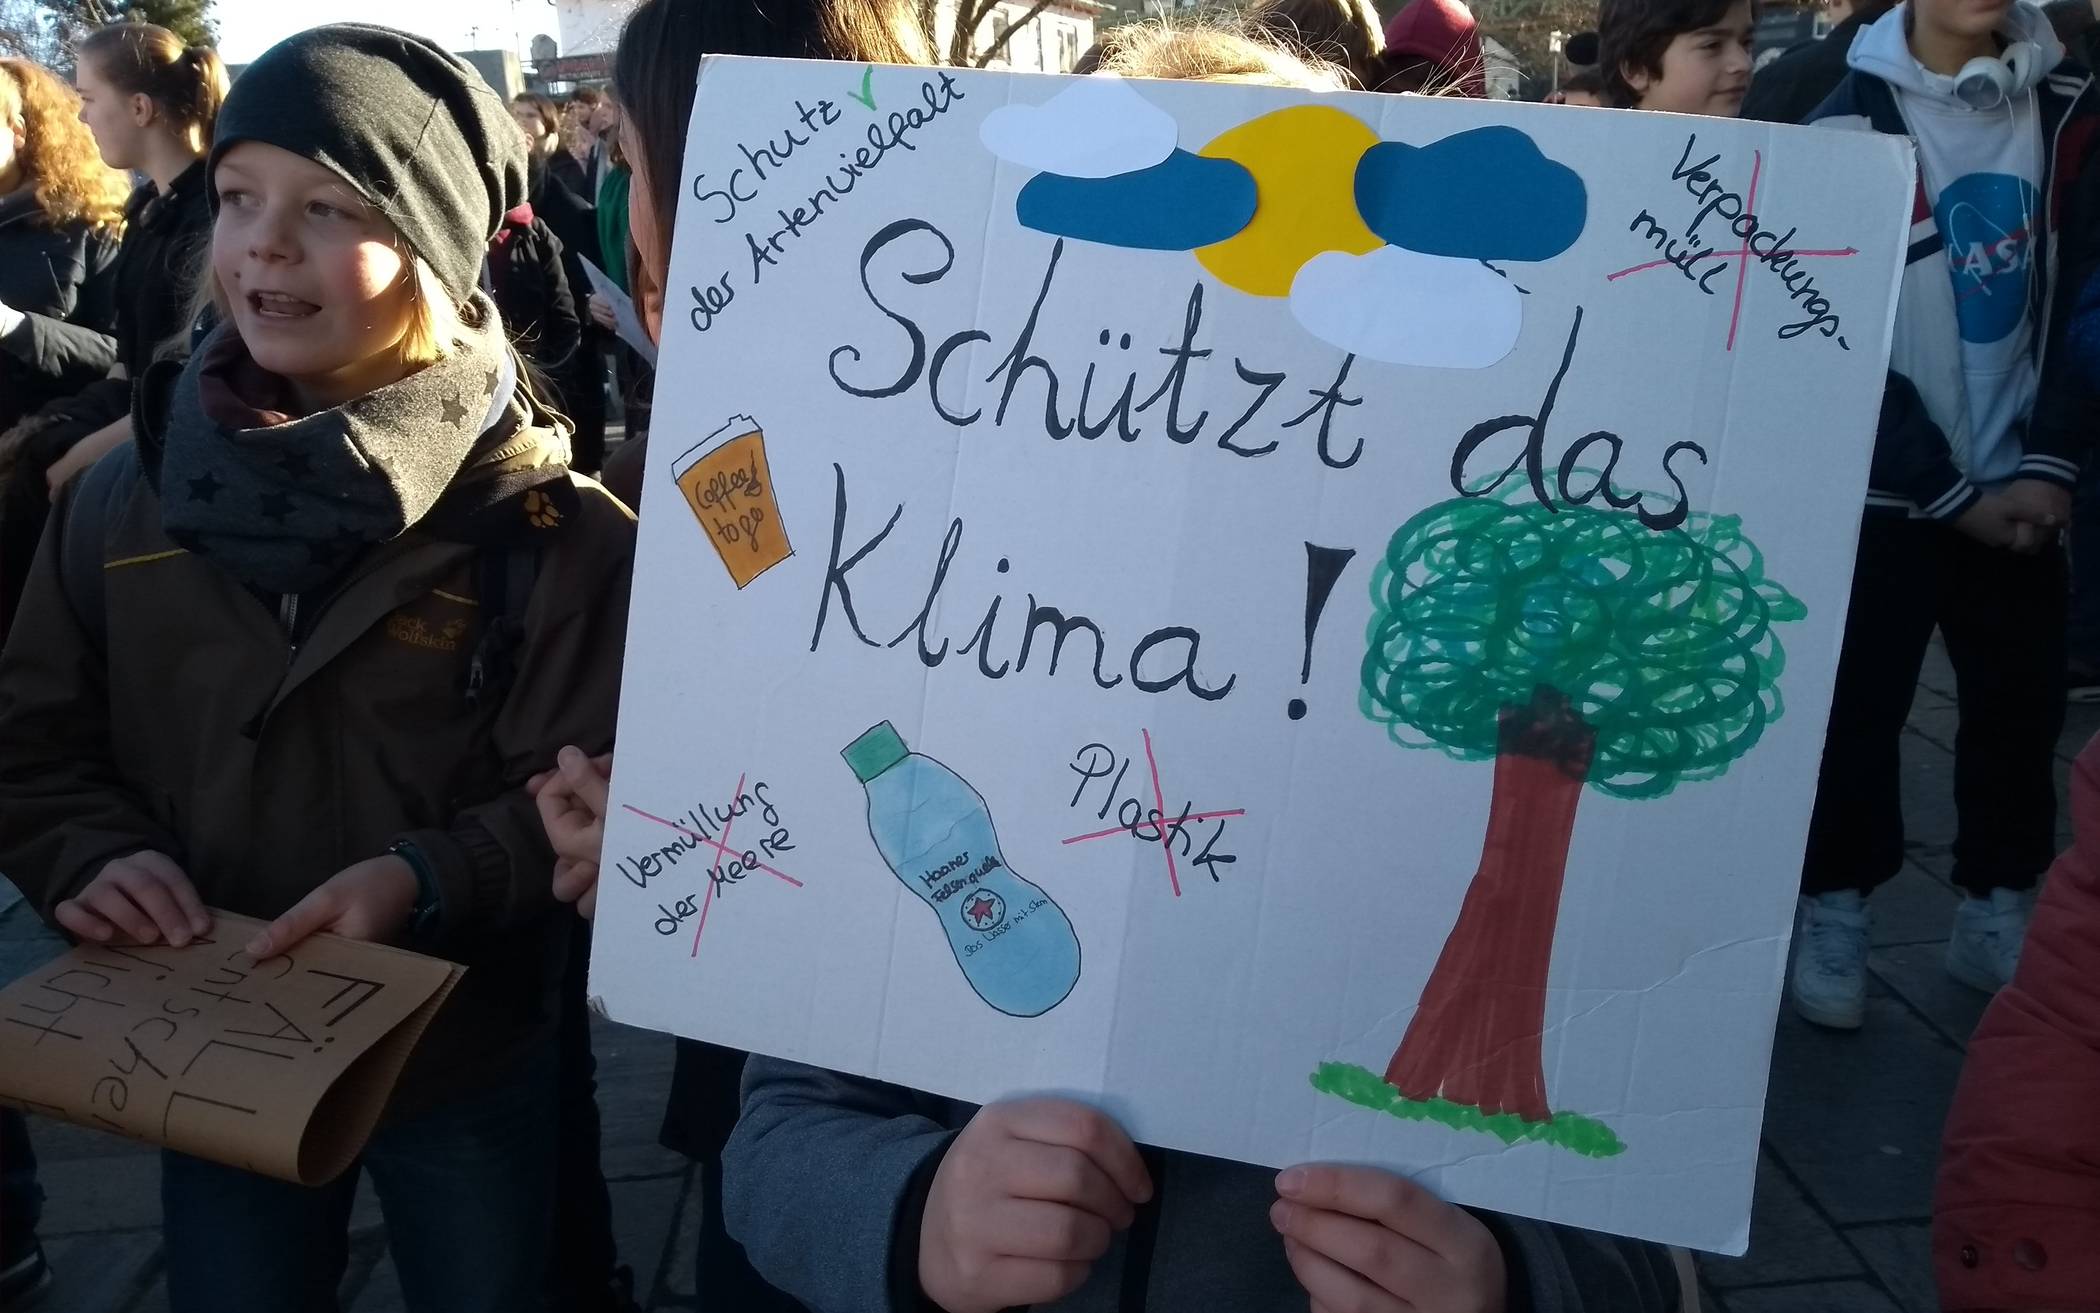 Auch in Wuppertal wird am weltweiten „Fridays for Future“ Streiktag am kommenden Freitag, kurz vor der Europawahl, wieder gestreikt.